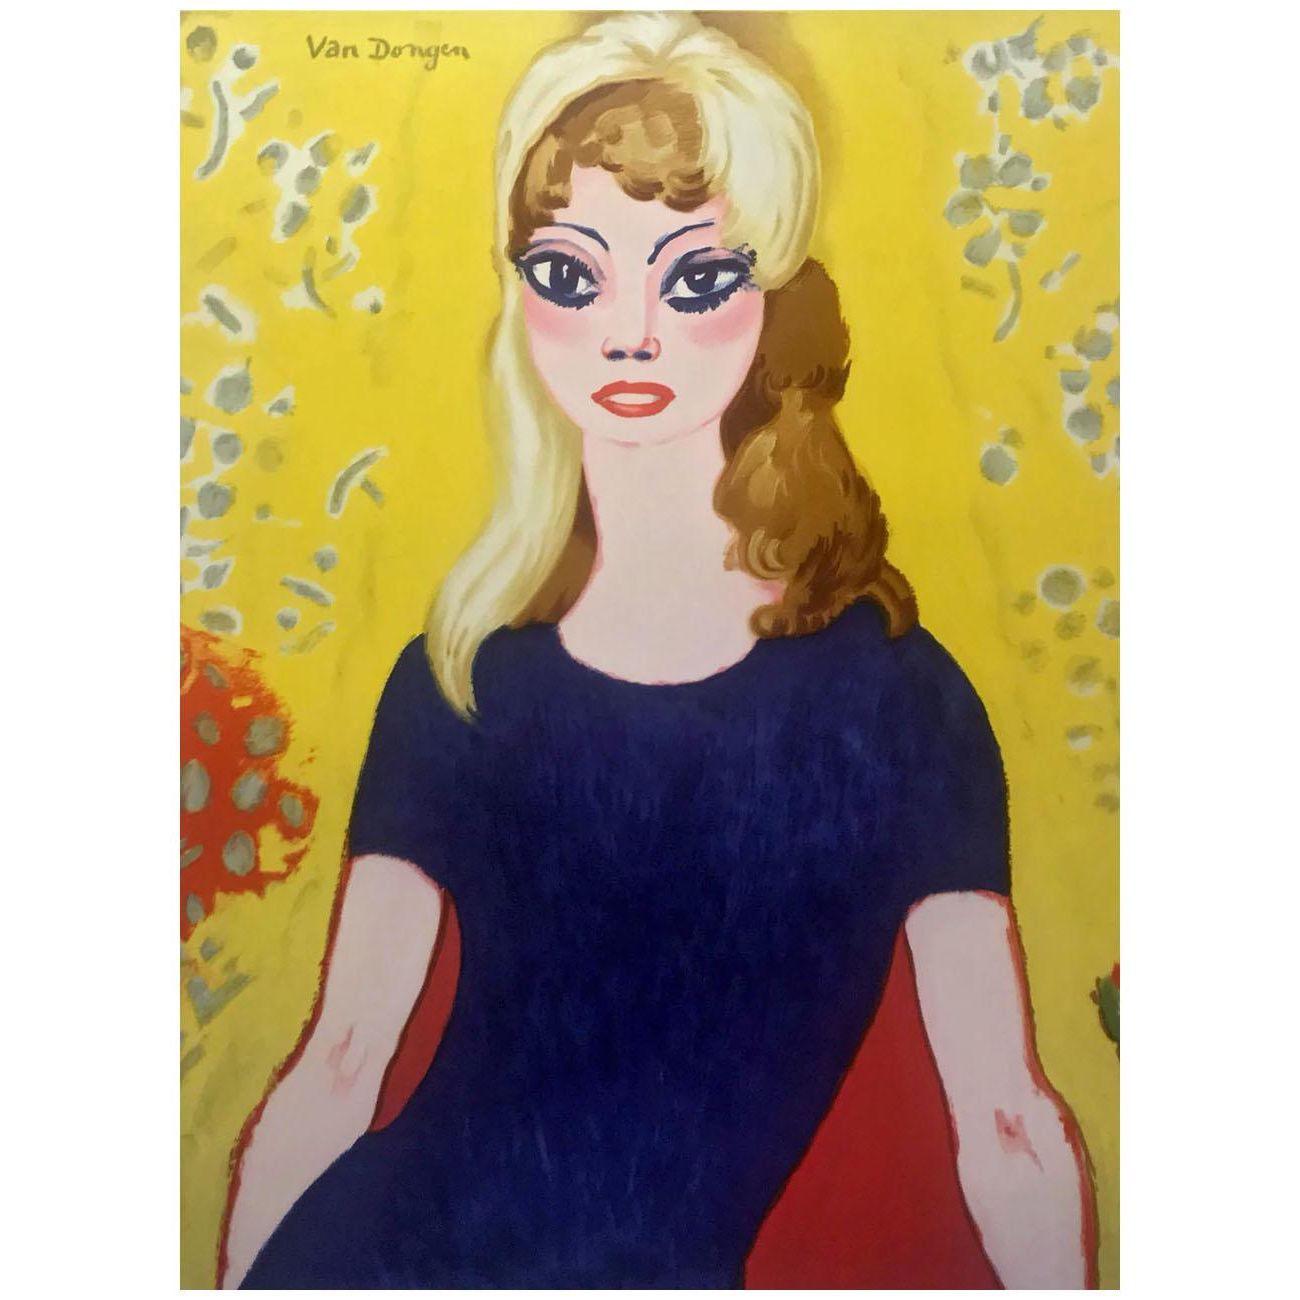 Kees van Dongen. Brigitte Bardot. 1958. Musee de la Mode (Musee Galliera), Paris